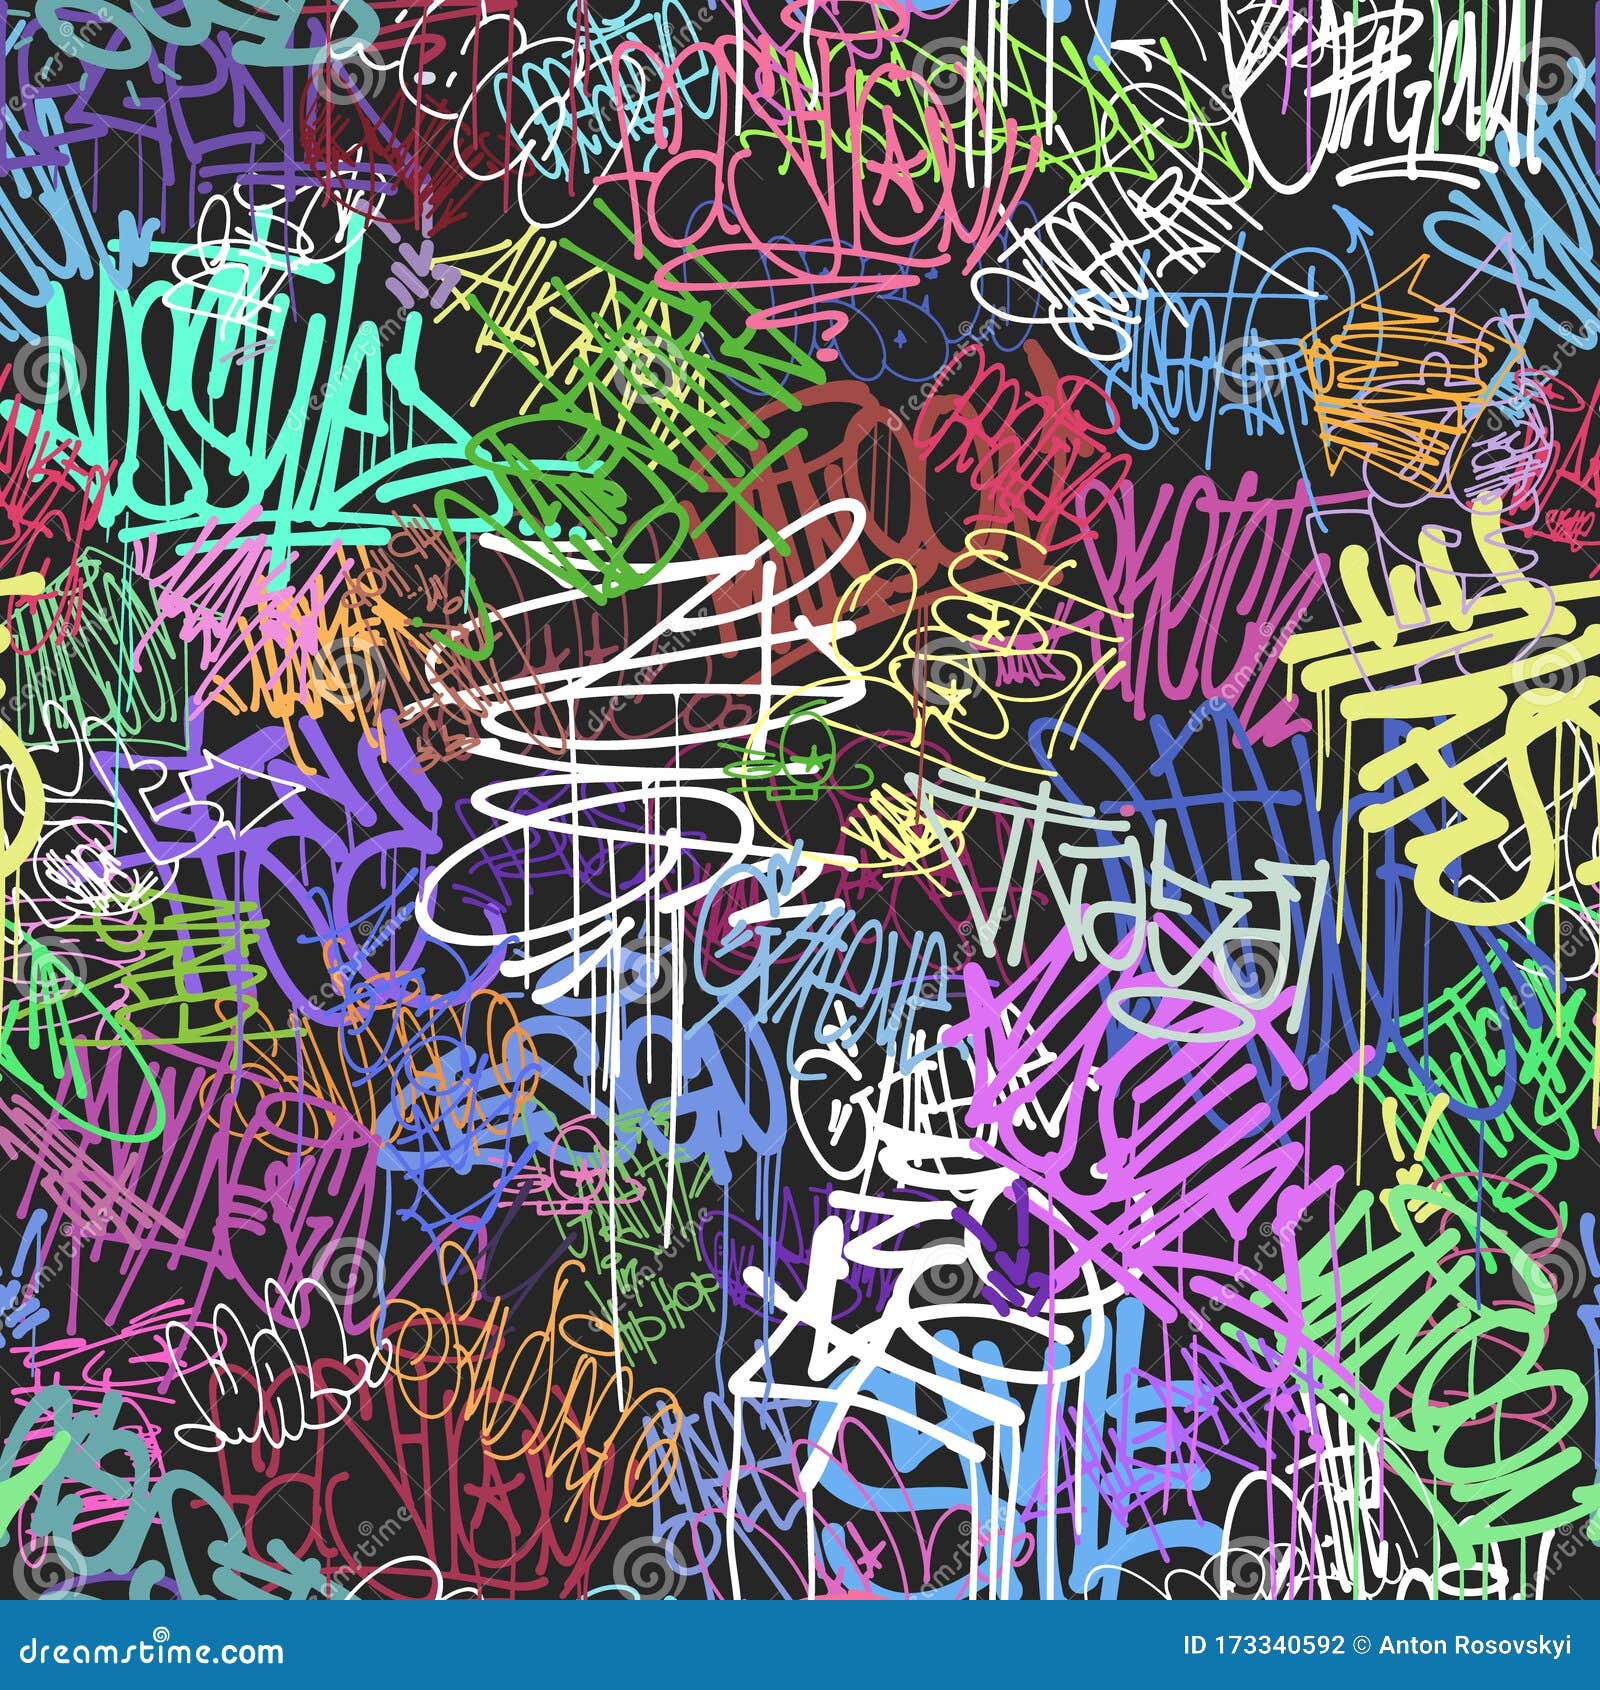 graffity wall colorful tags seamless pattern, graffiti street art